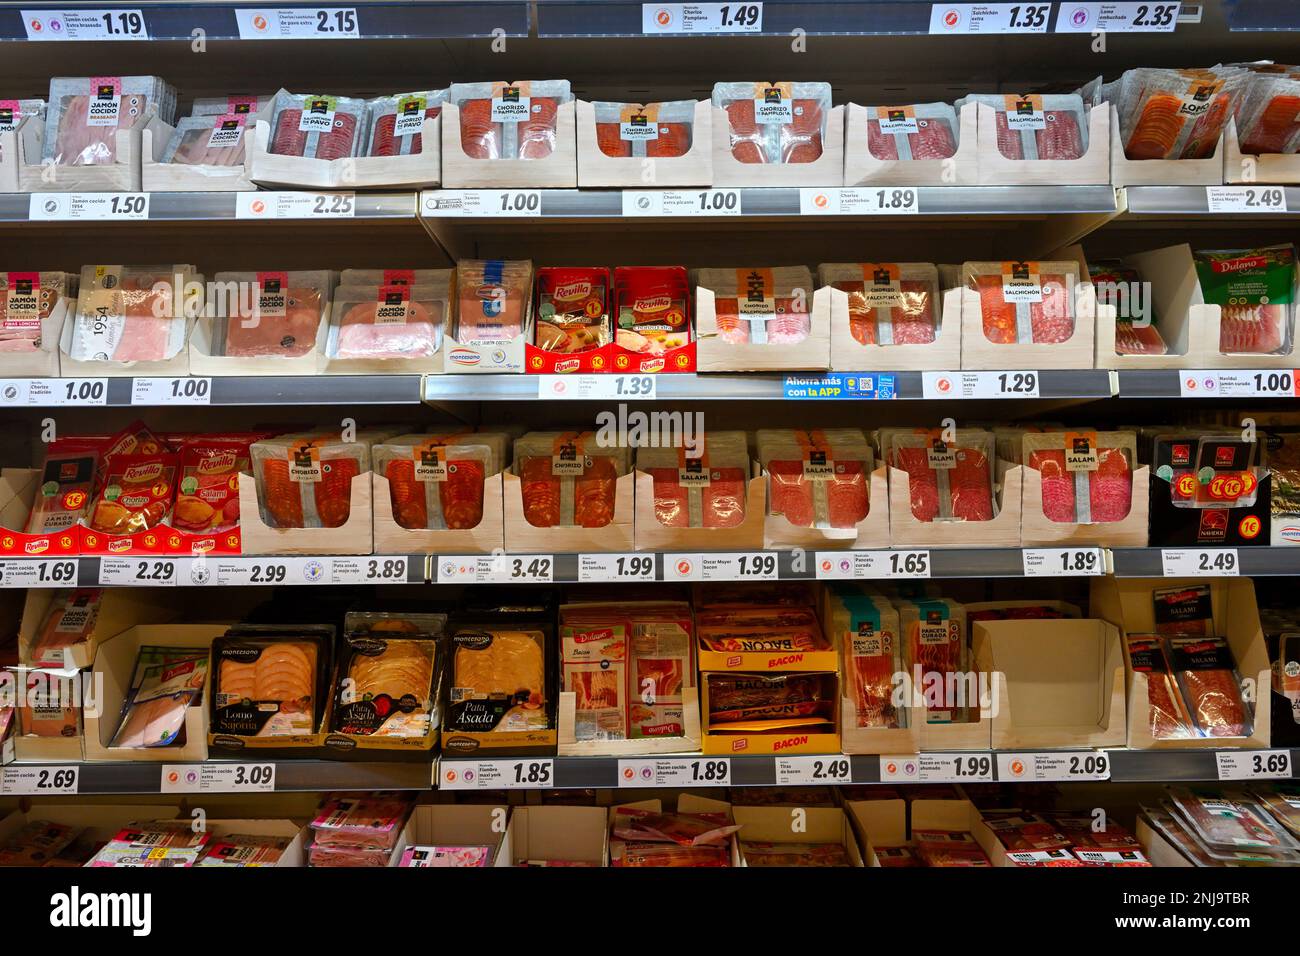 Regale im Supermarkt mit Päckchen haltbar gemachtem Räucherfleisch, Salami, Chorizo, Speck, Stockfoto